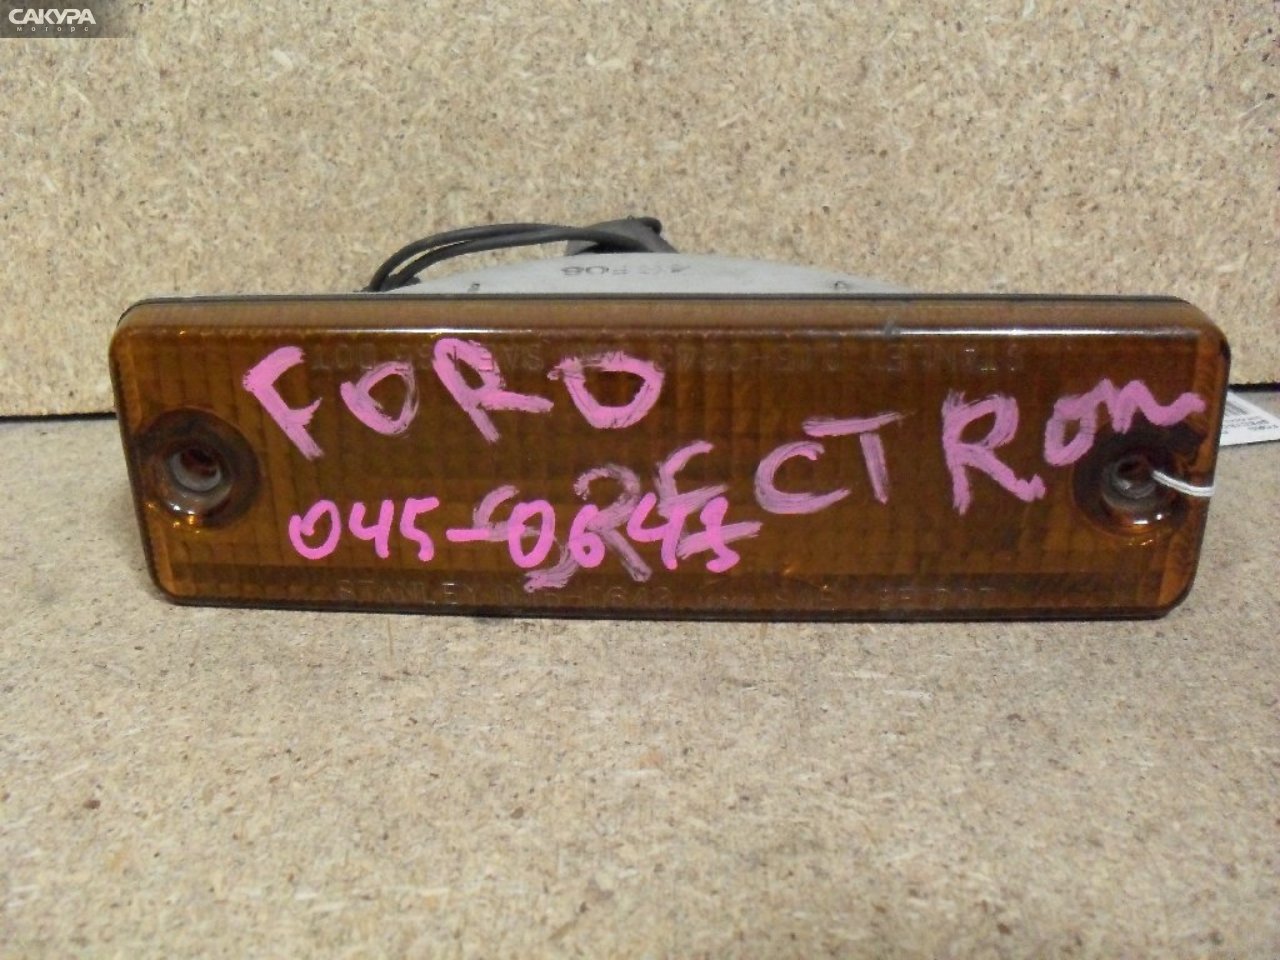 Повторитель правый Ford Spectron SSE8WF 045-0643: купить в Сакура Абакан.